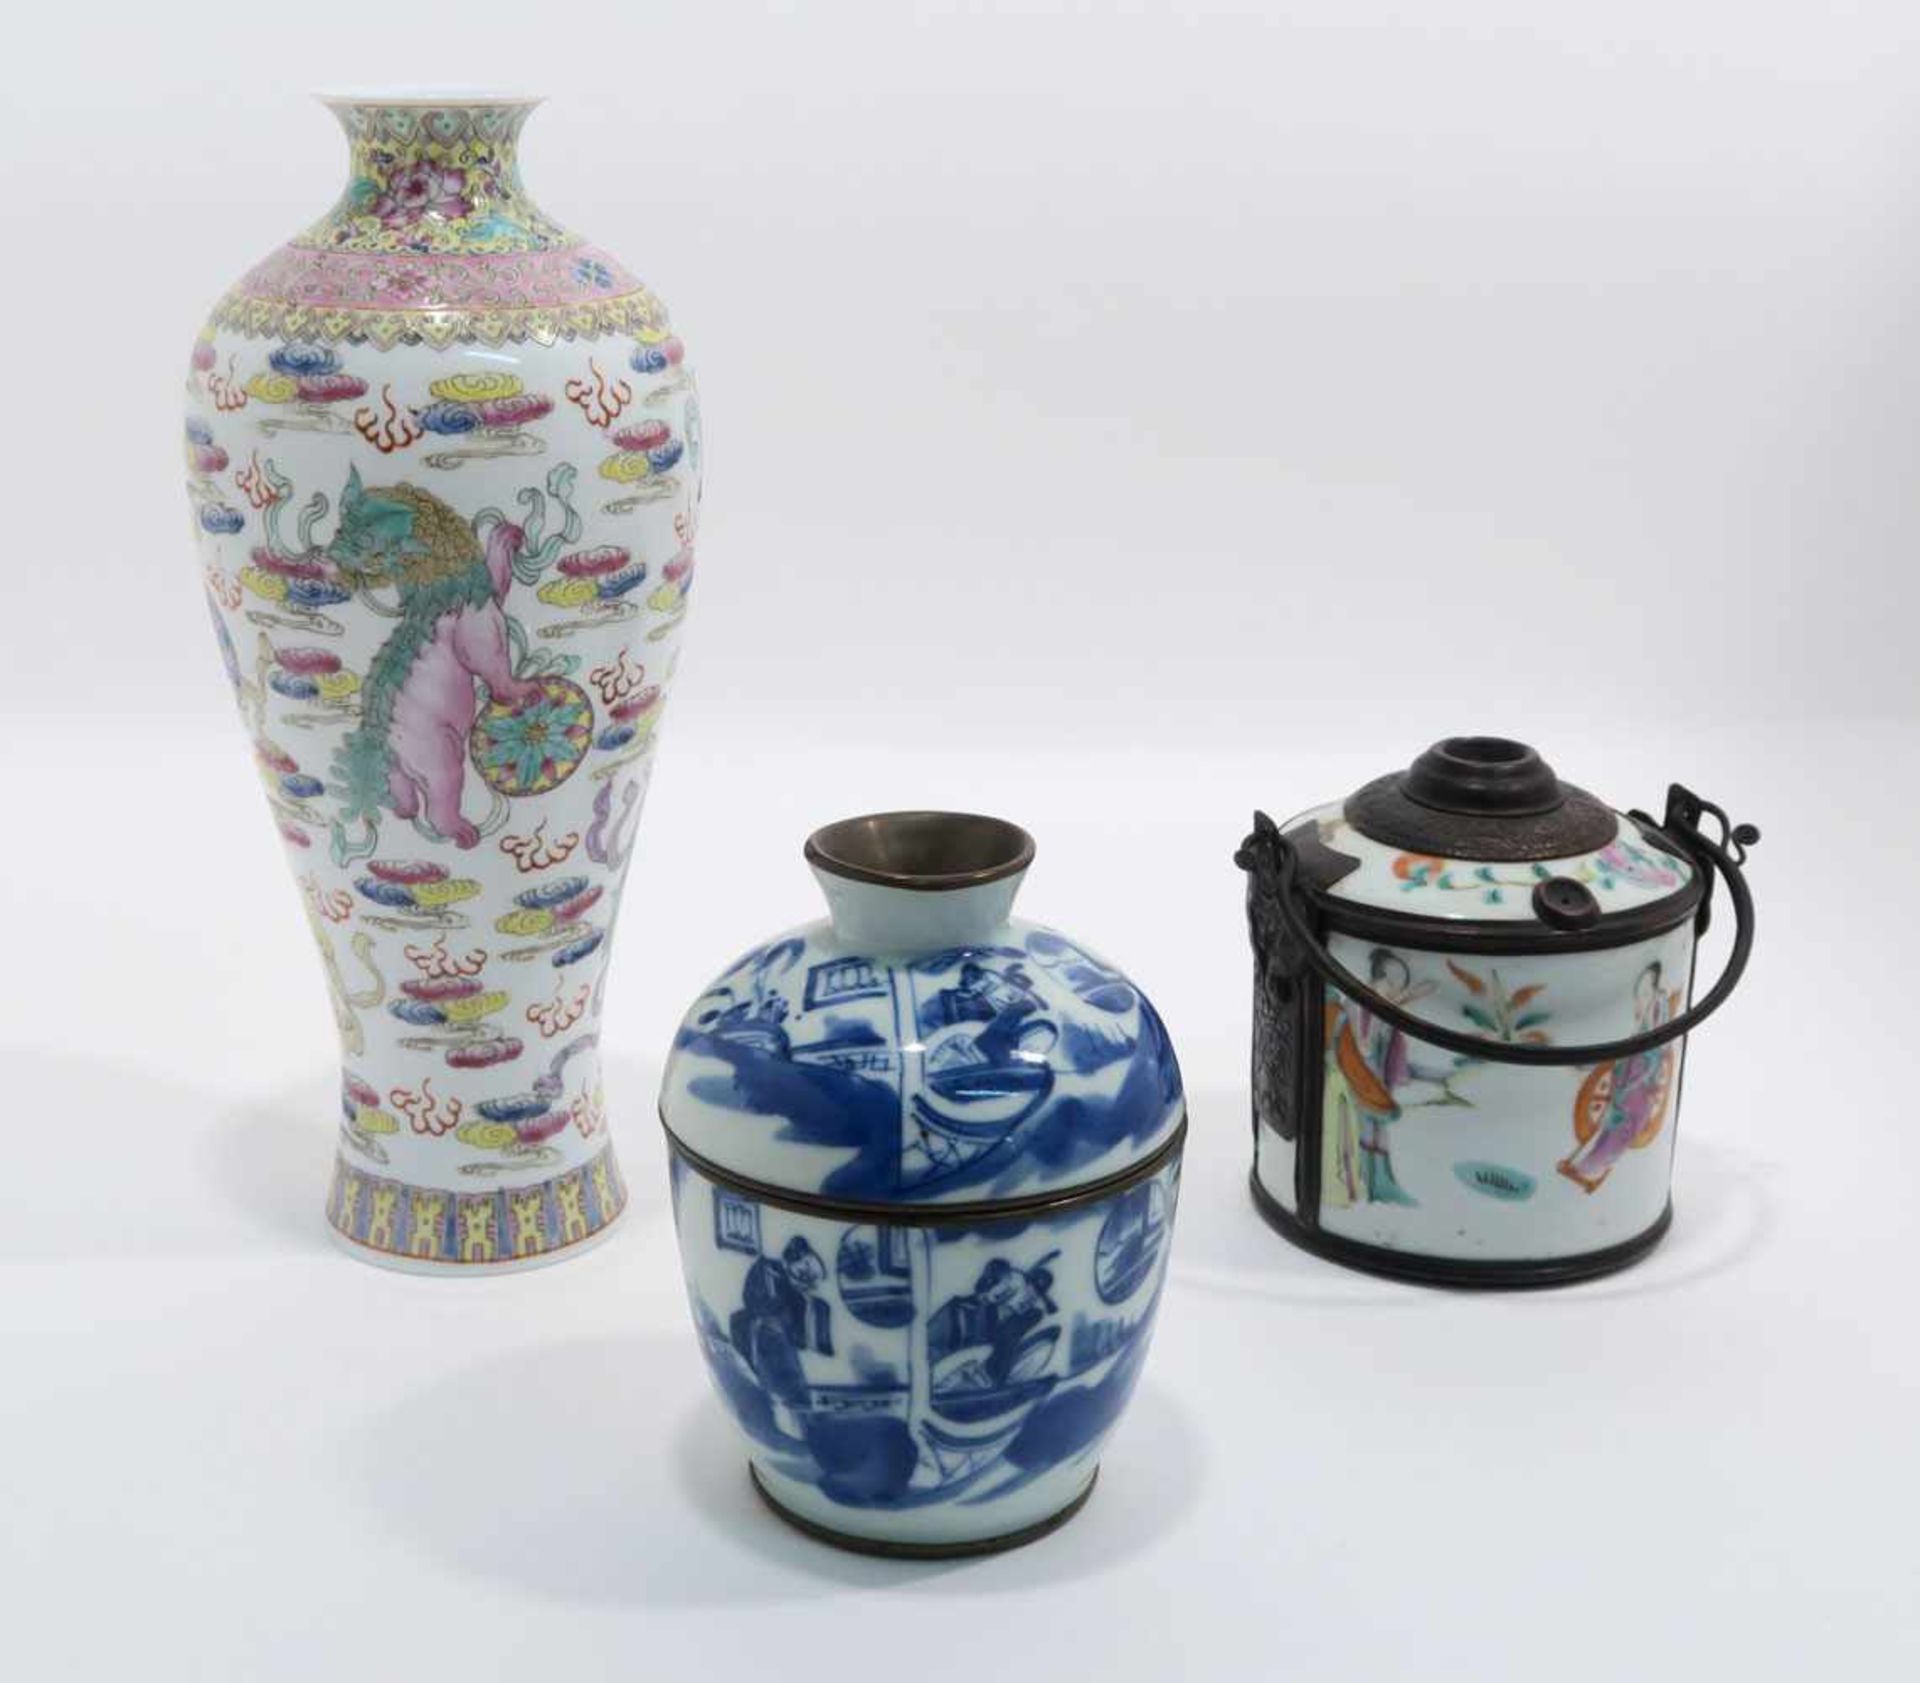 Opiumpfeife / Vase / DeckelgefäßChina. Porzellan, tlw. mit Kupfermontierung. Verschiedene bunte bzw.